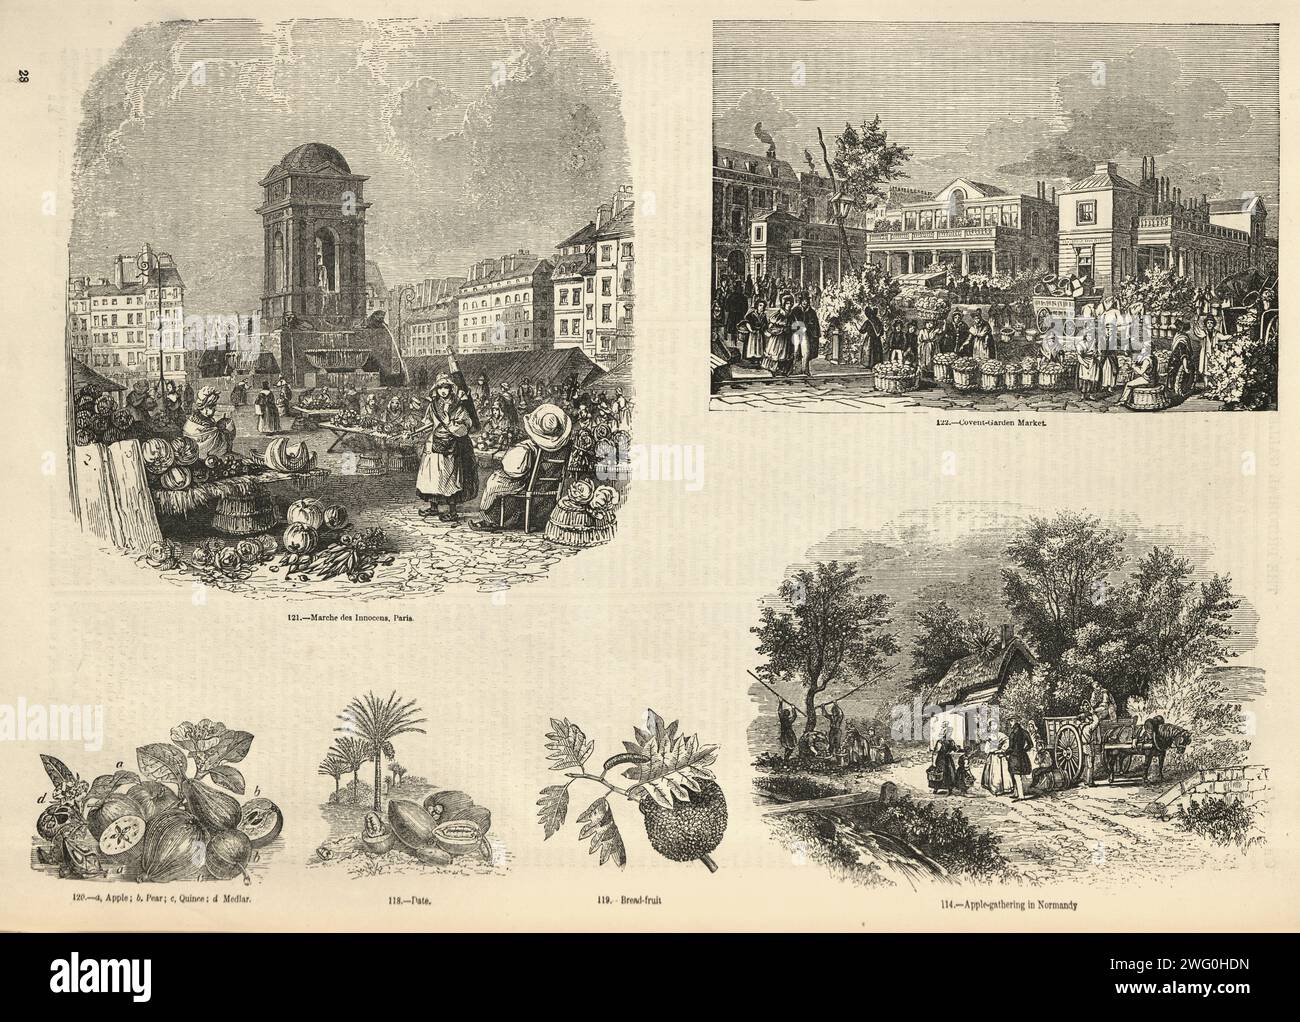 Page d'illustration vintage Marche de Innocens, Paris, Covent Garden, marchés de la ville, années 1850, histoire victorienne 19e siècle Banque D'Images